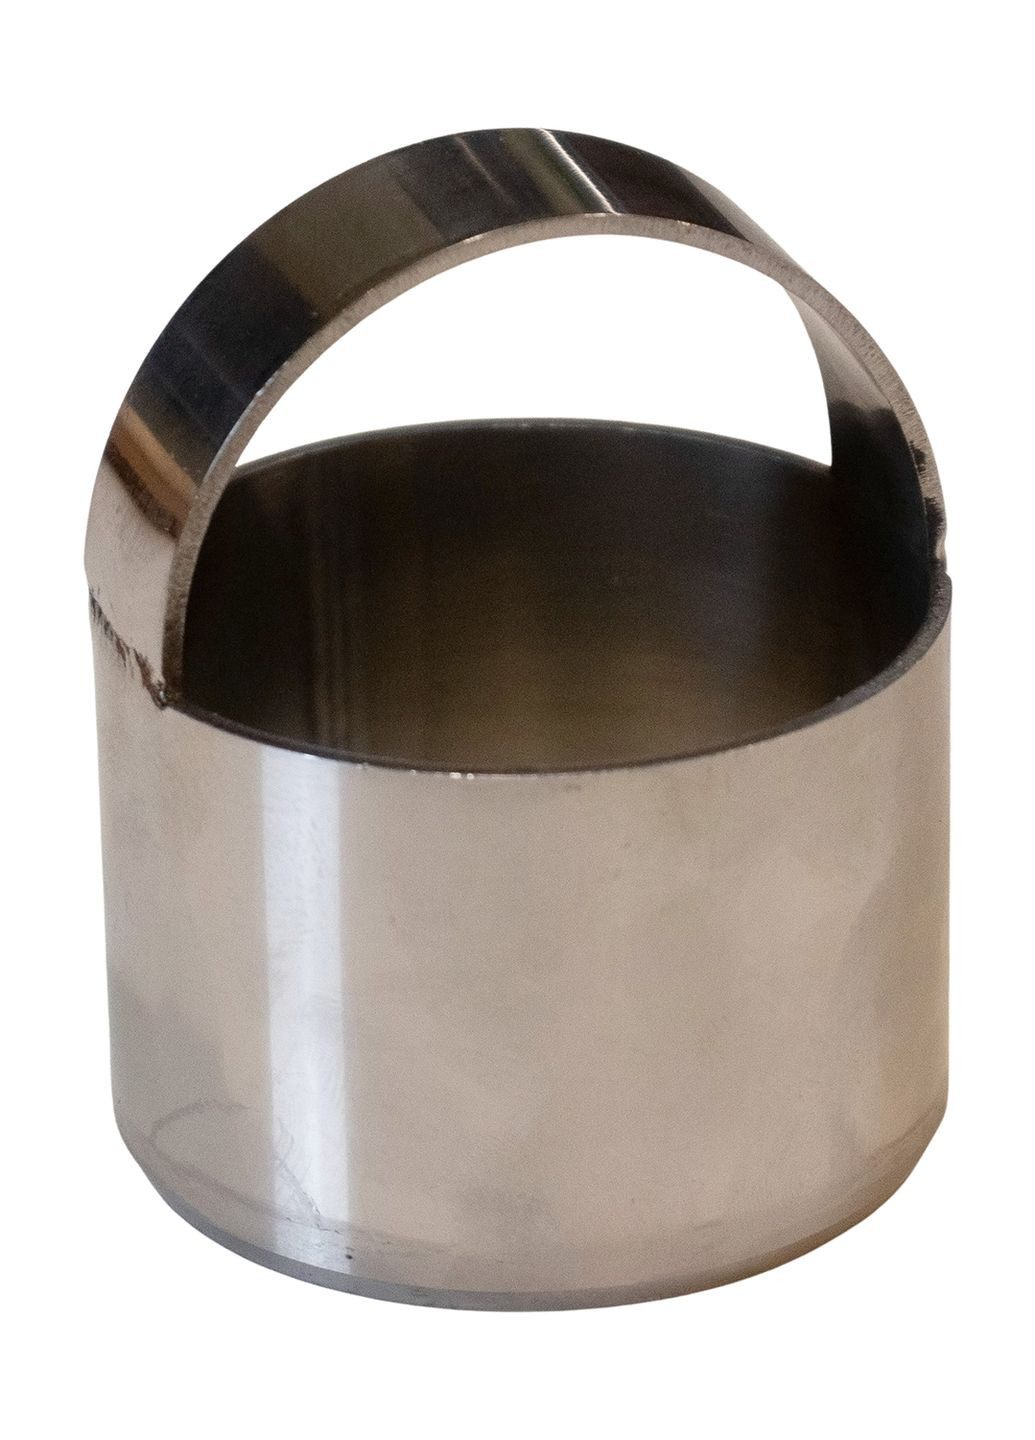 Металлическая форма кольцо с ручкой для вырезки теста (вареников, пельменей, печенья) Ø 5 см Metalworkshop (274060250)